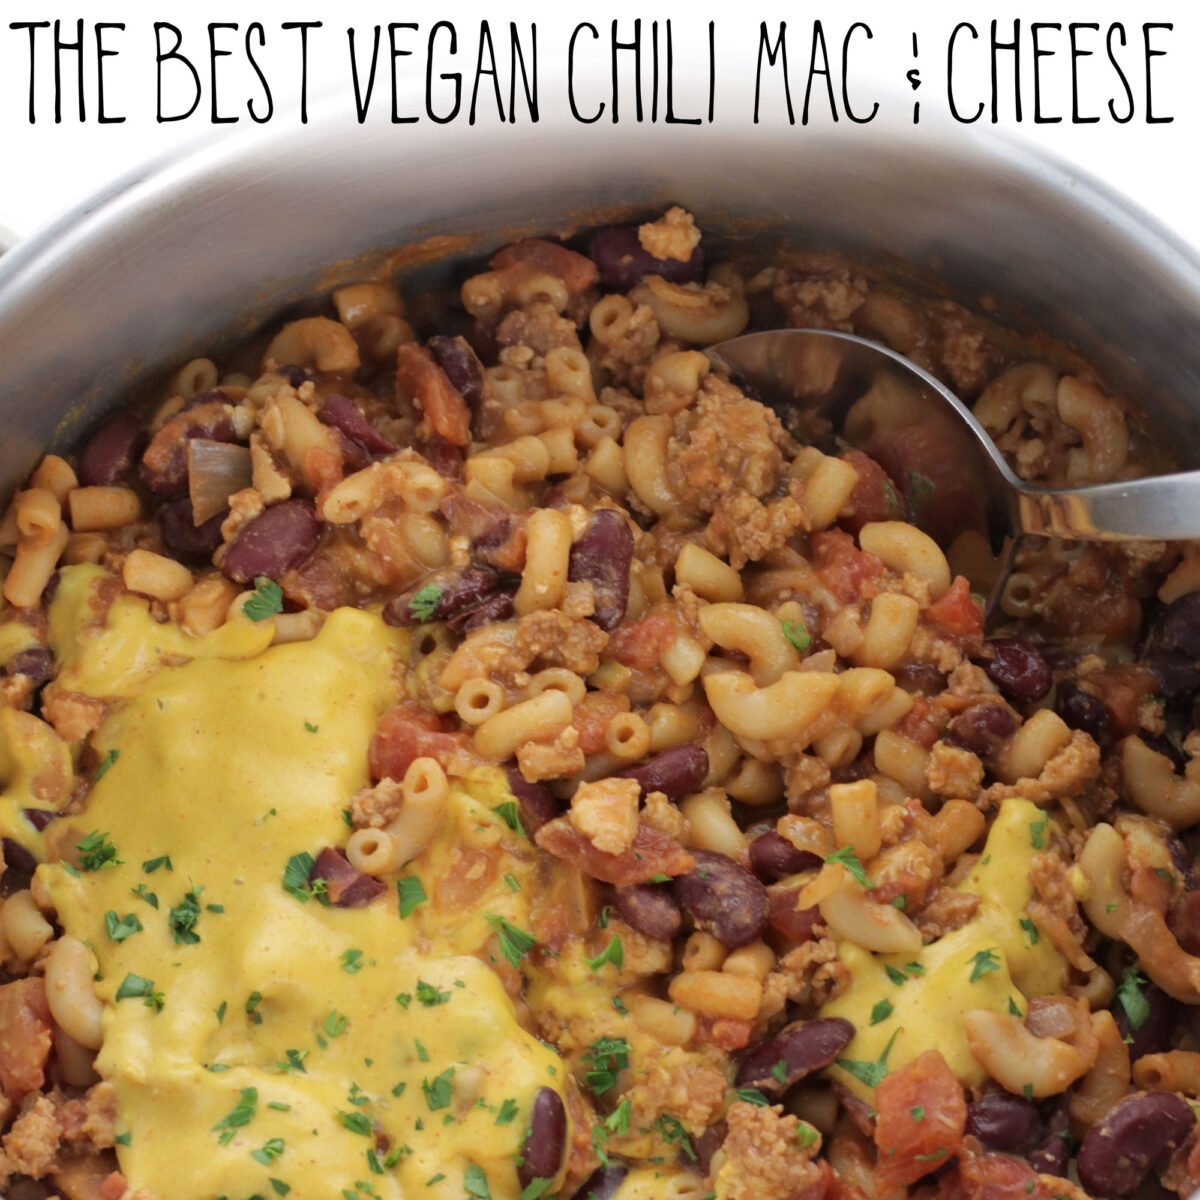 The Best Vegan Chili Mac & Cheese